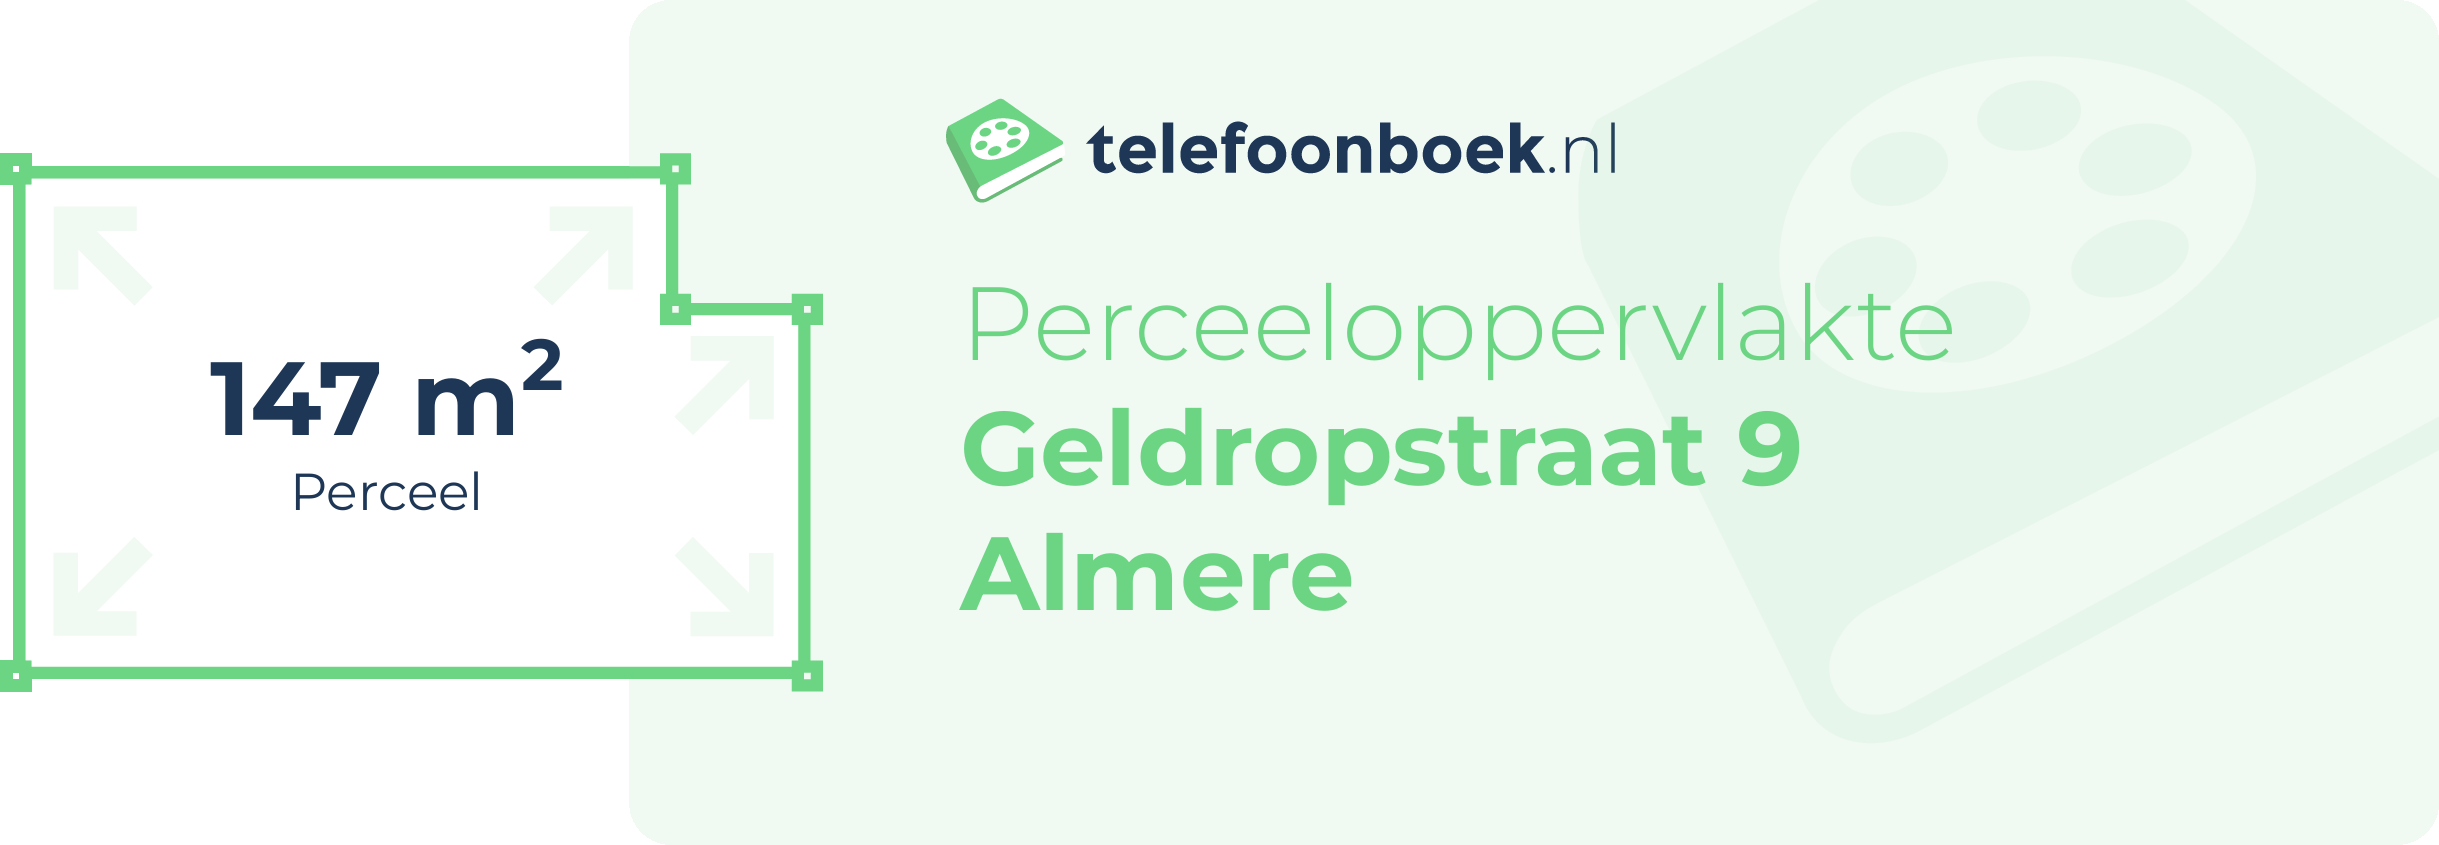 Perceeloppervlakte Geldropstraat 9 Almere